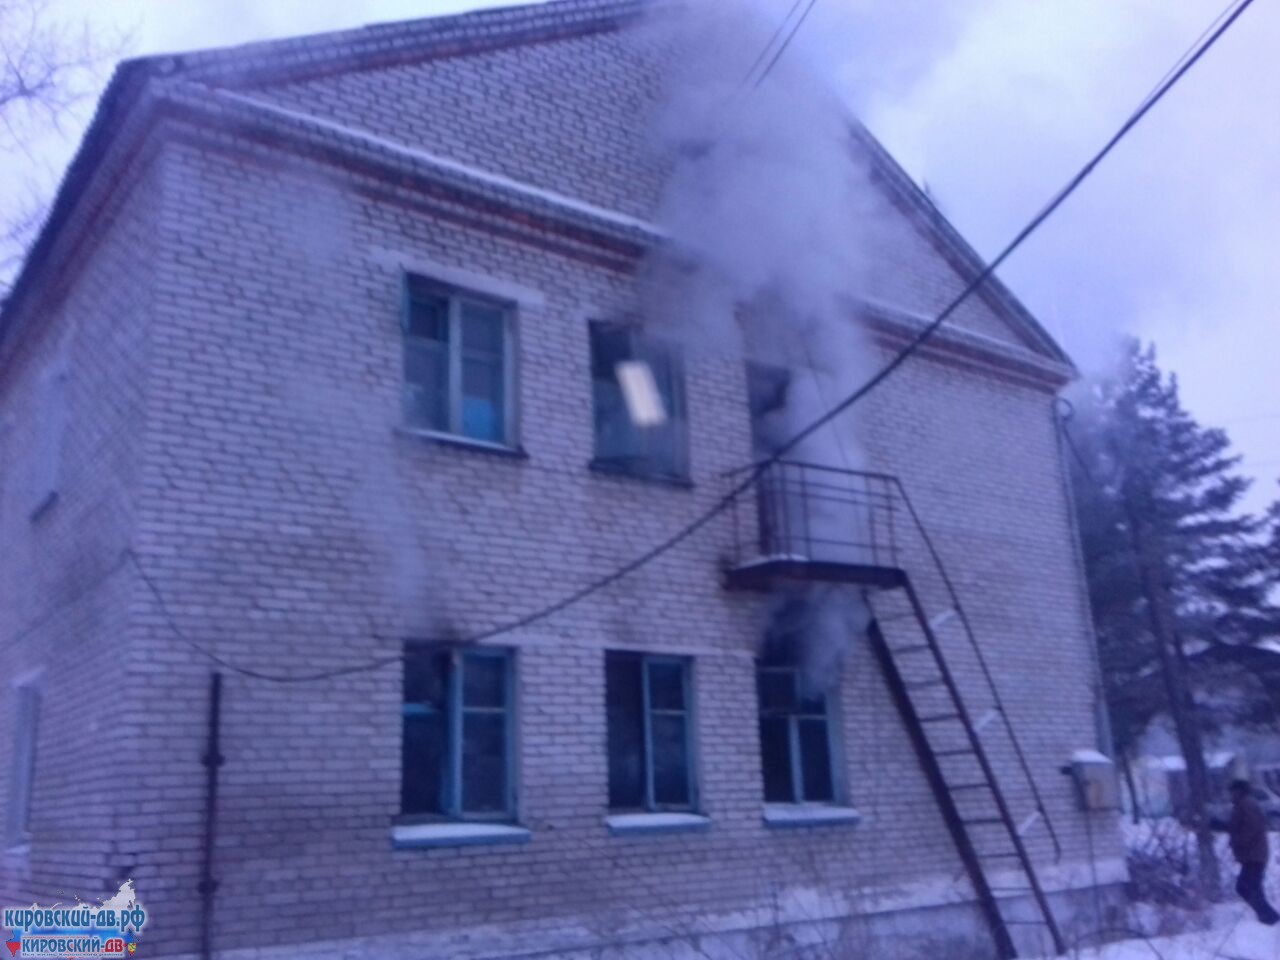 Огнеборцы спасли шесть человек на пожаре в посёлке Кировском